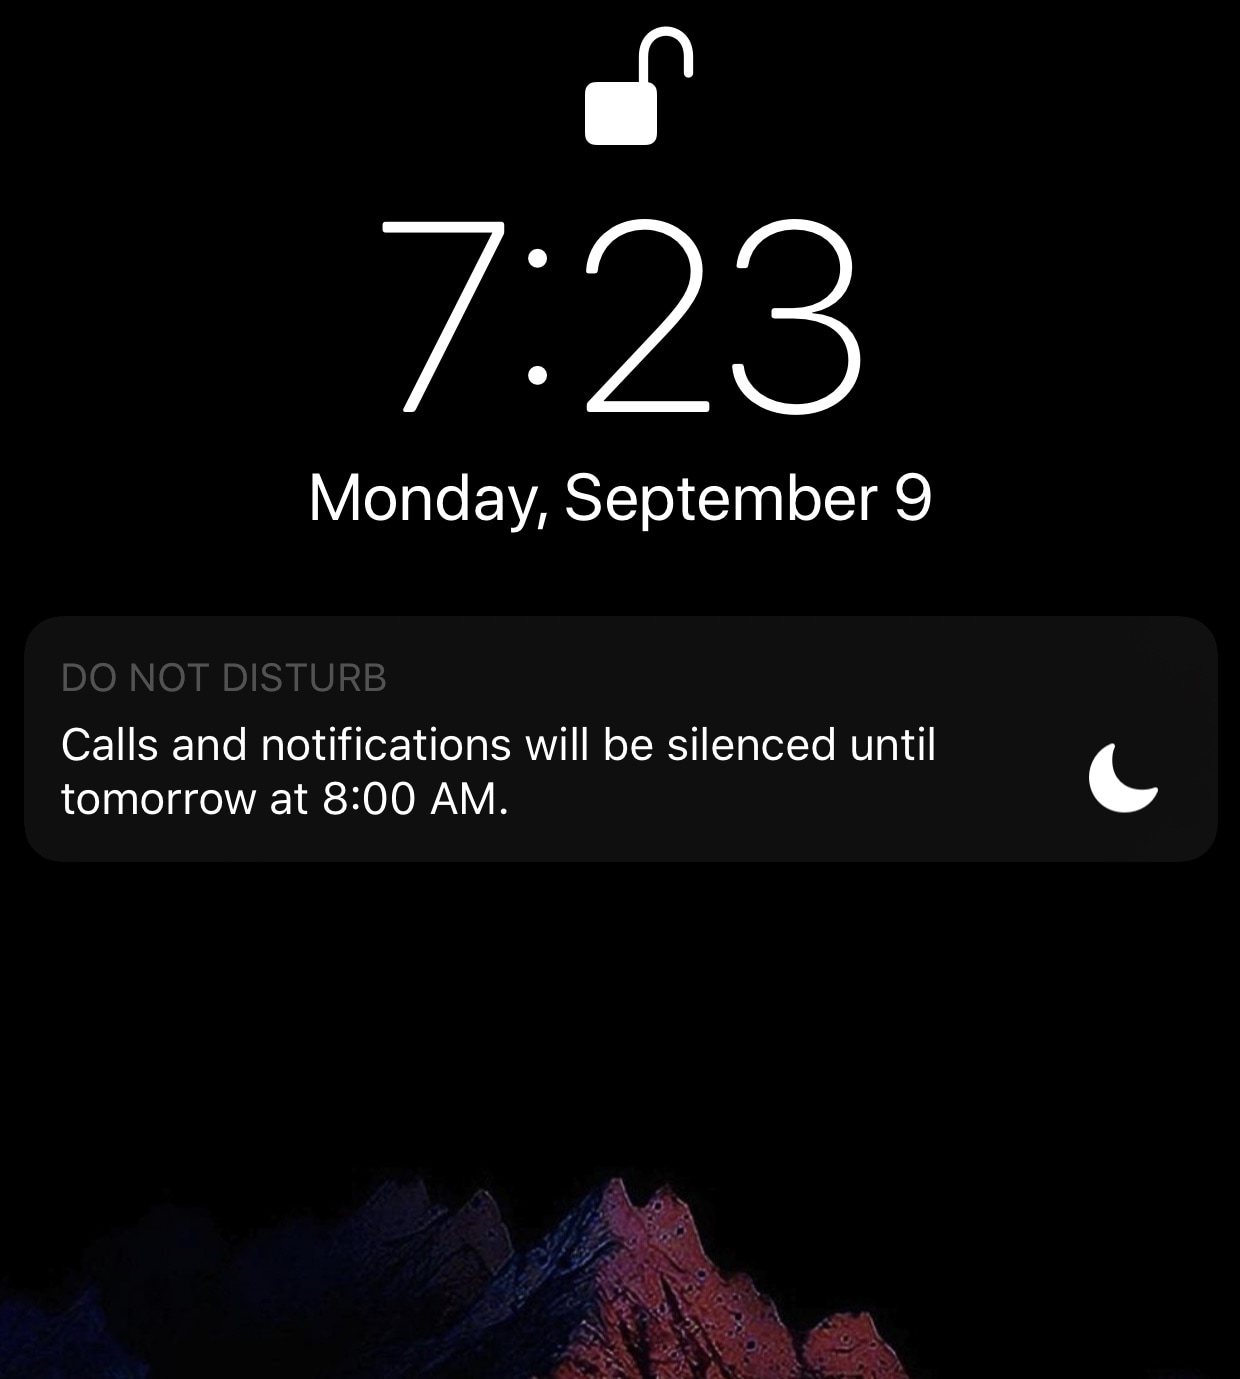 NoDNDBanner menonaktifkan spanduk Jangan Ganggu pada layar Kunci iOS 12 1